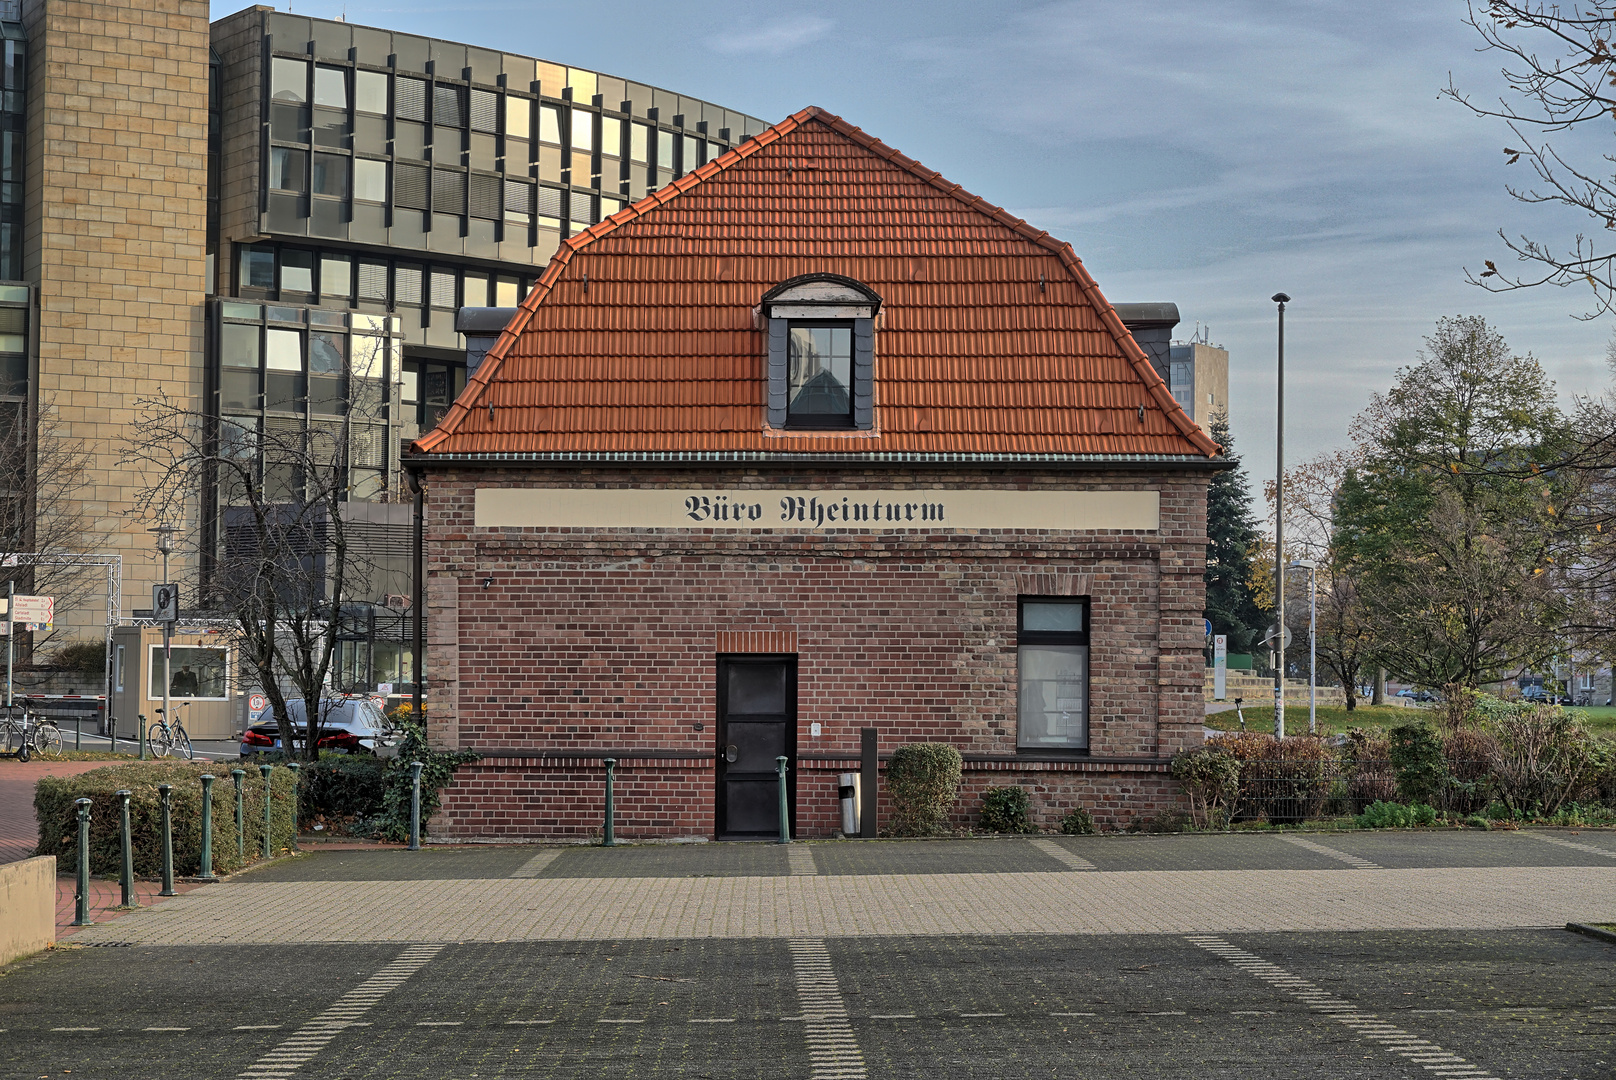 Büro Rheinturm